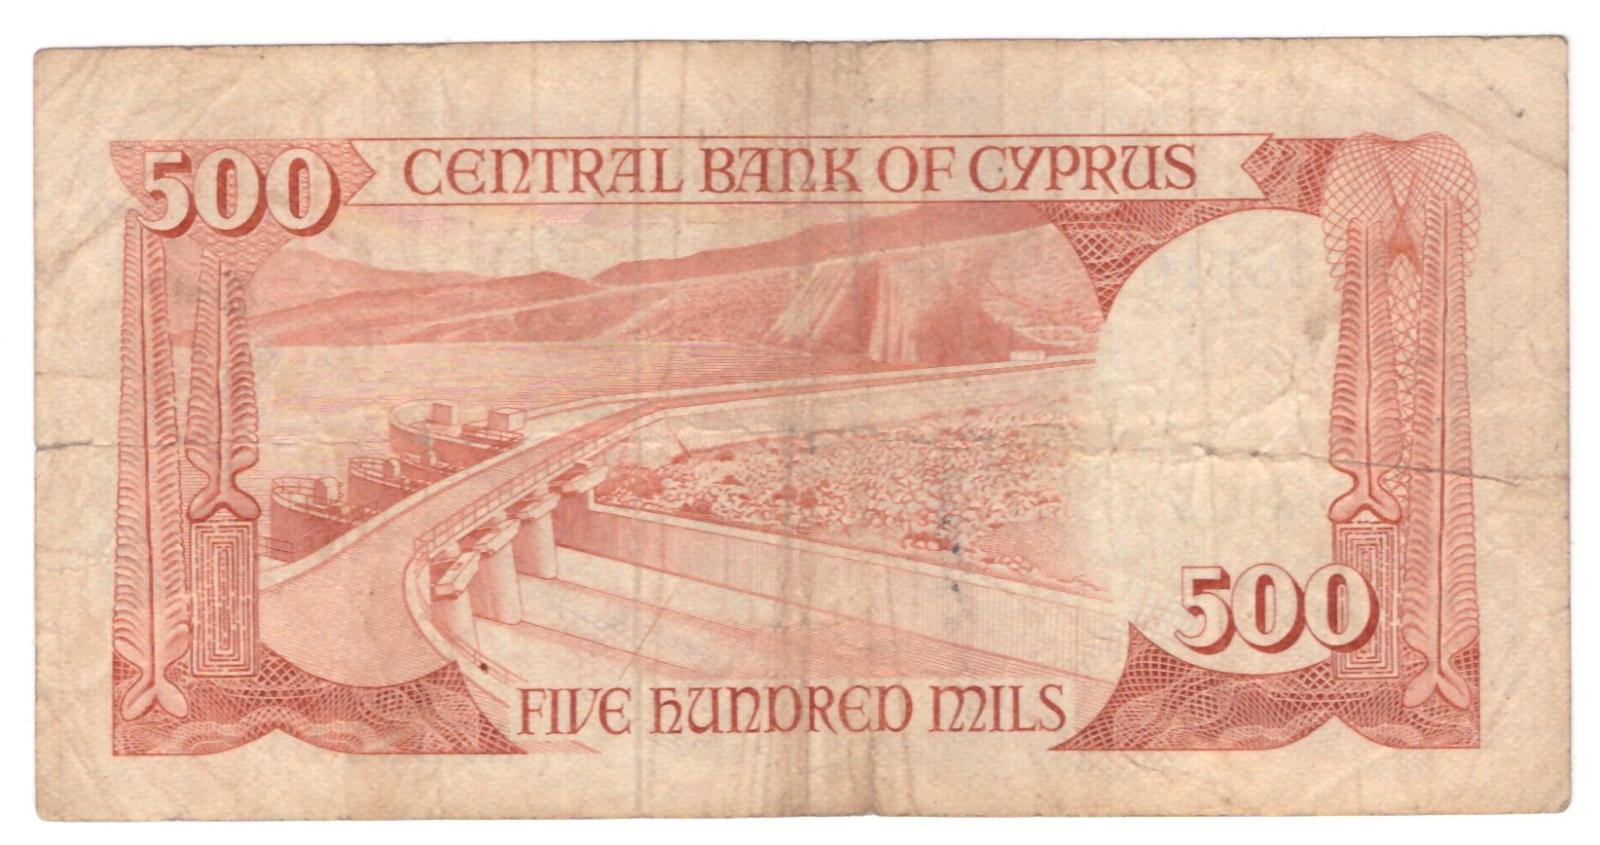 Kypr 500 Mils 1982 stav F,Pick 45 - Bankovky